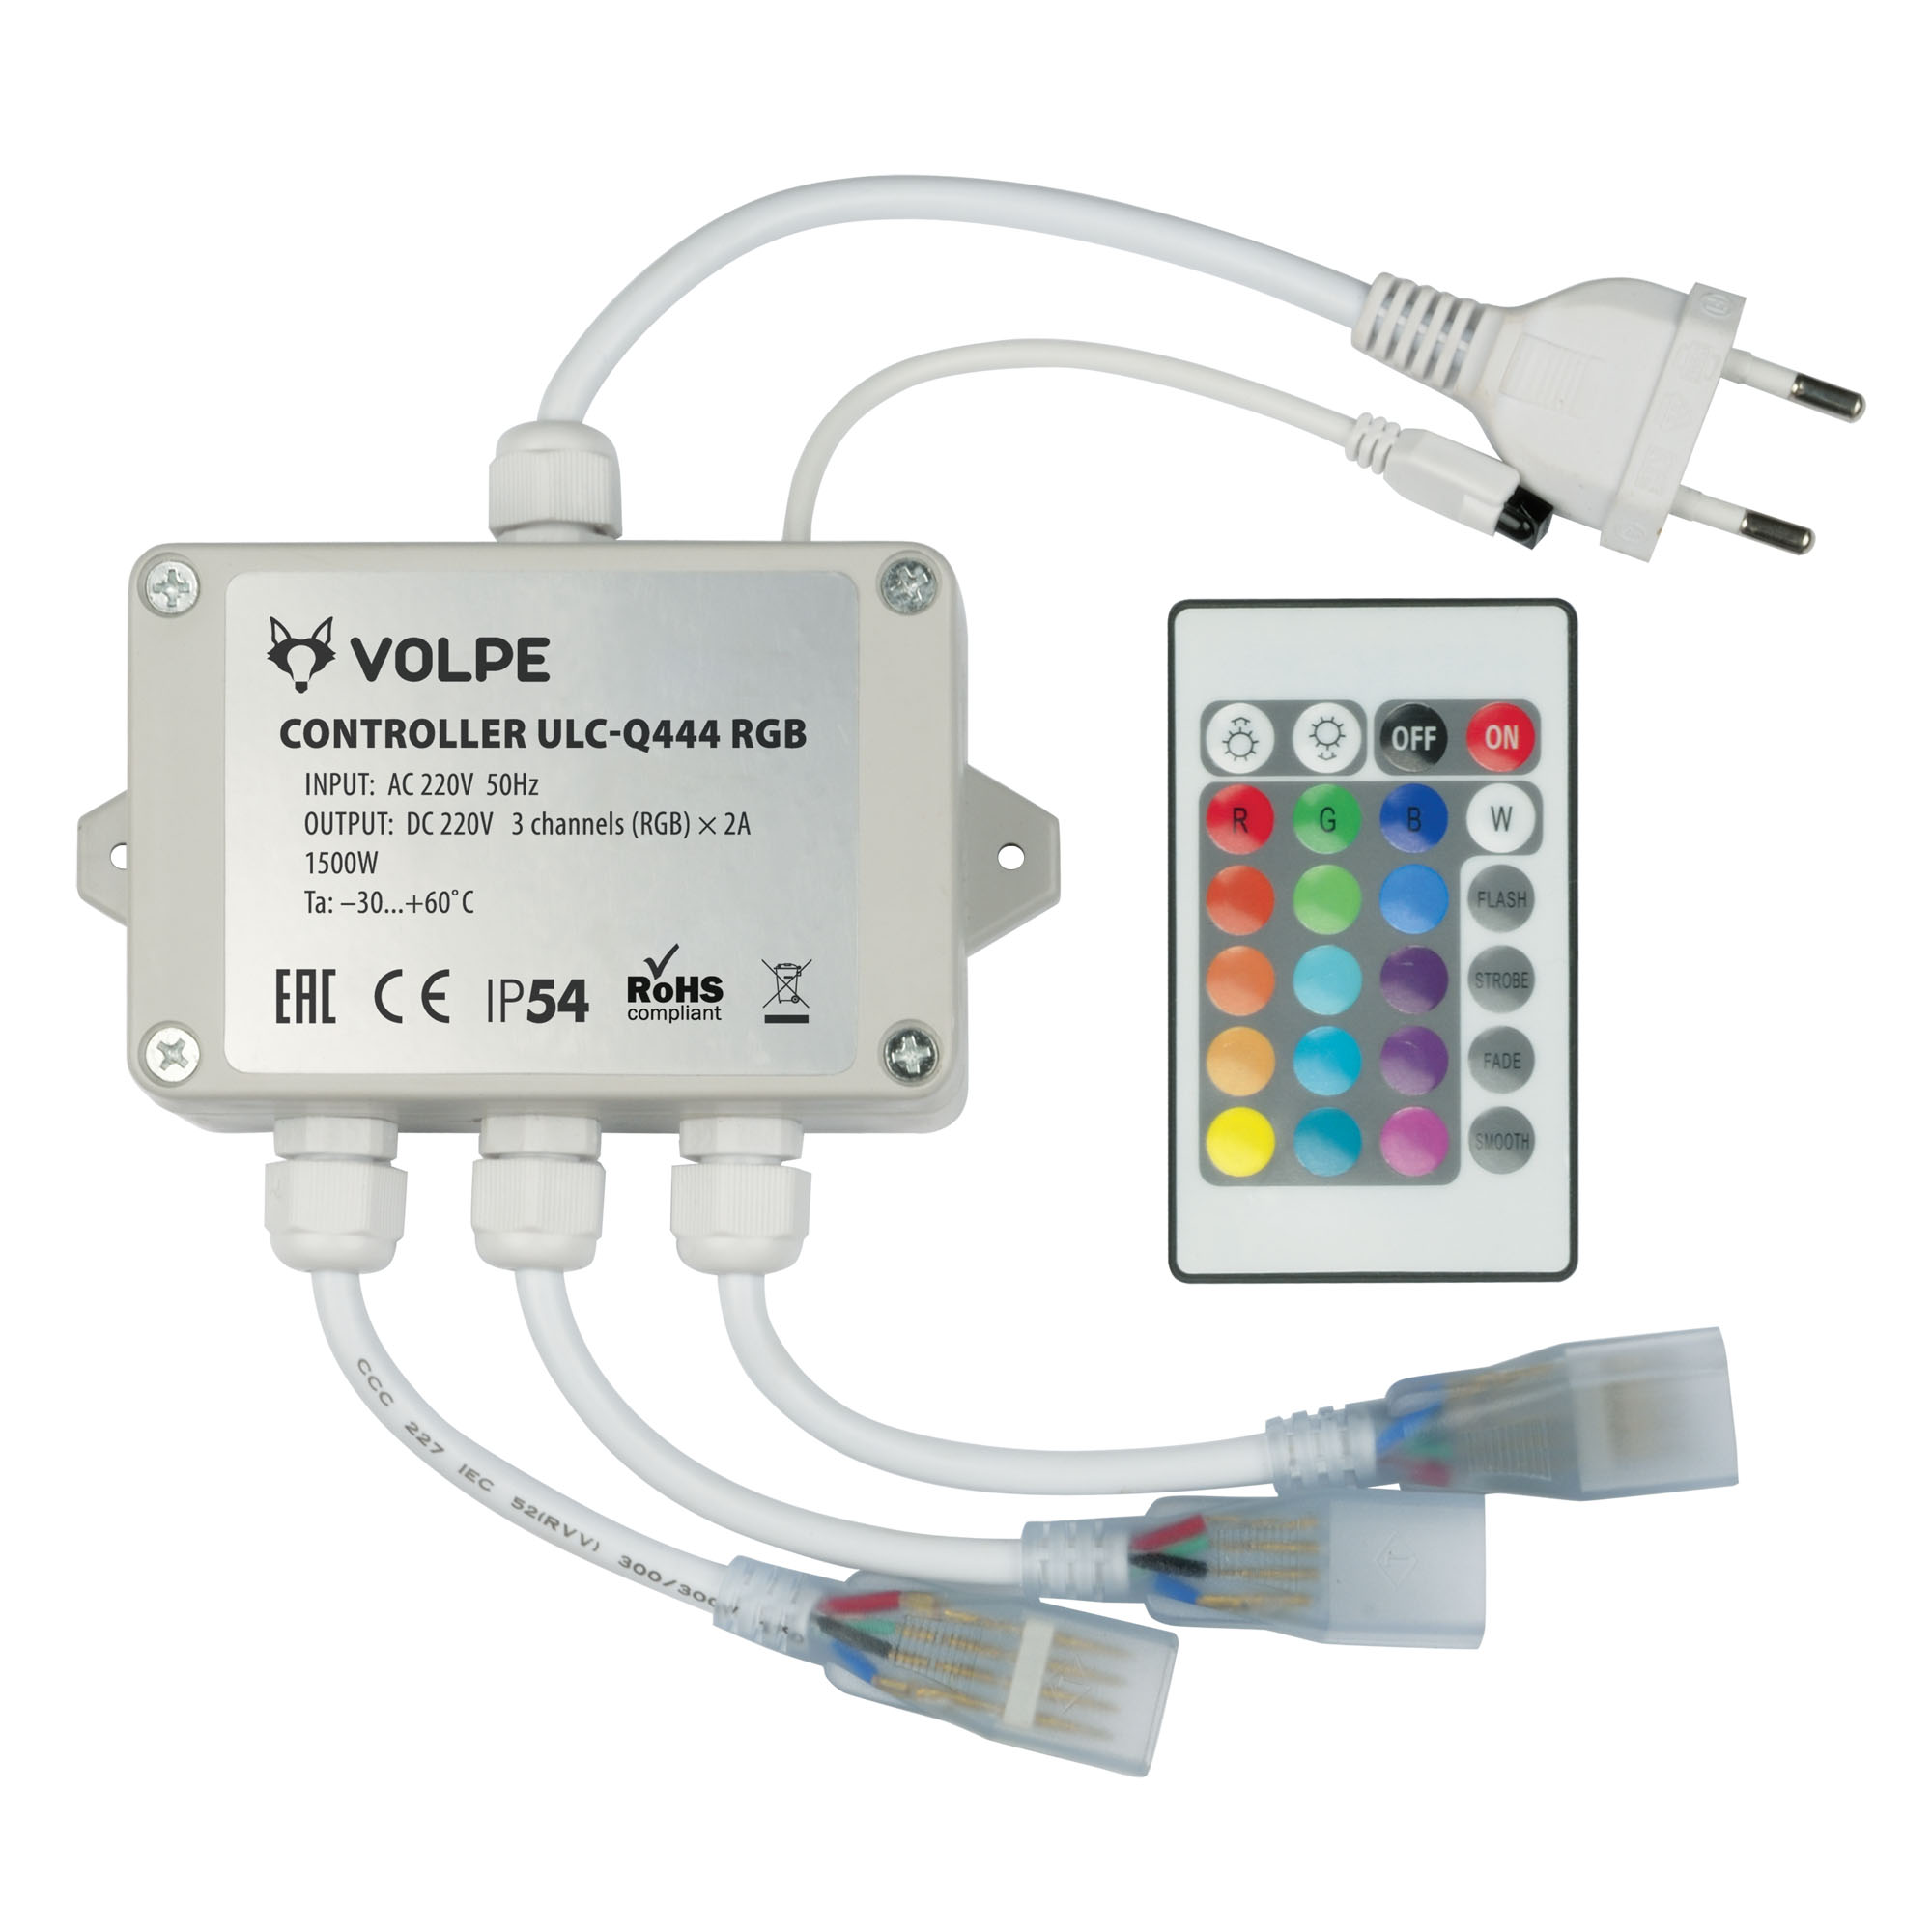 ULC-Q444 RGB WHITE Контроллер для управления светодиодными RGB ULS-5050 лентами 220В. 3 выхода. 1440Вт. с пультом ДУ ИК. ТМ Volpe.